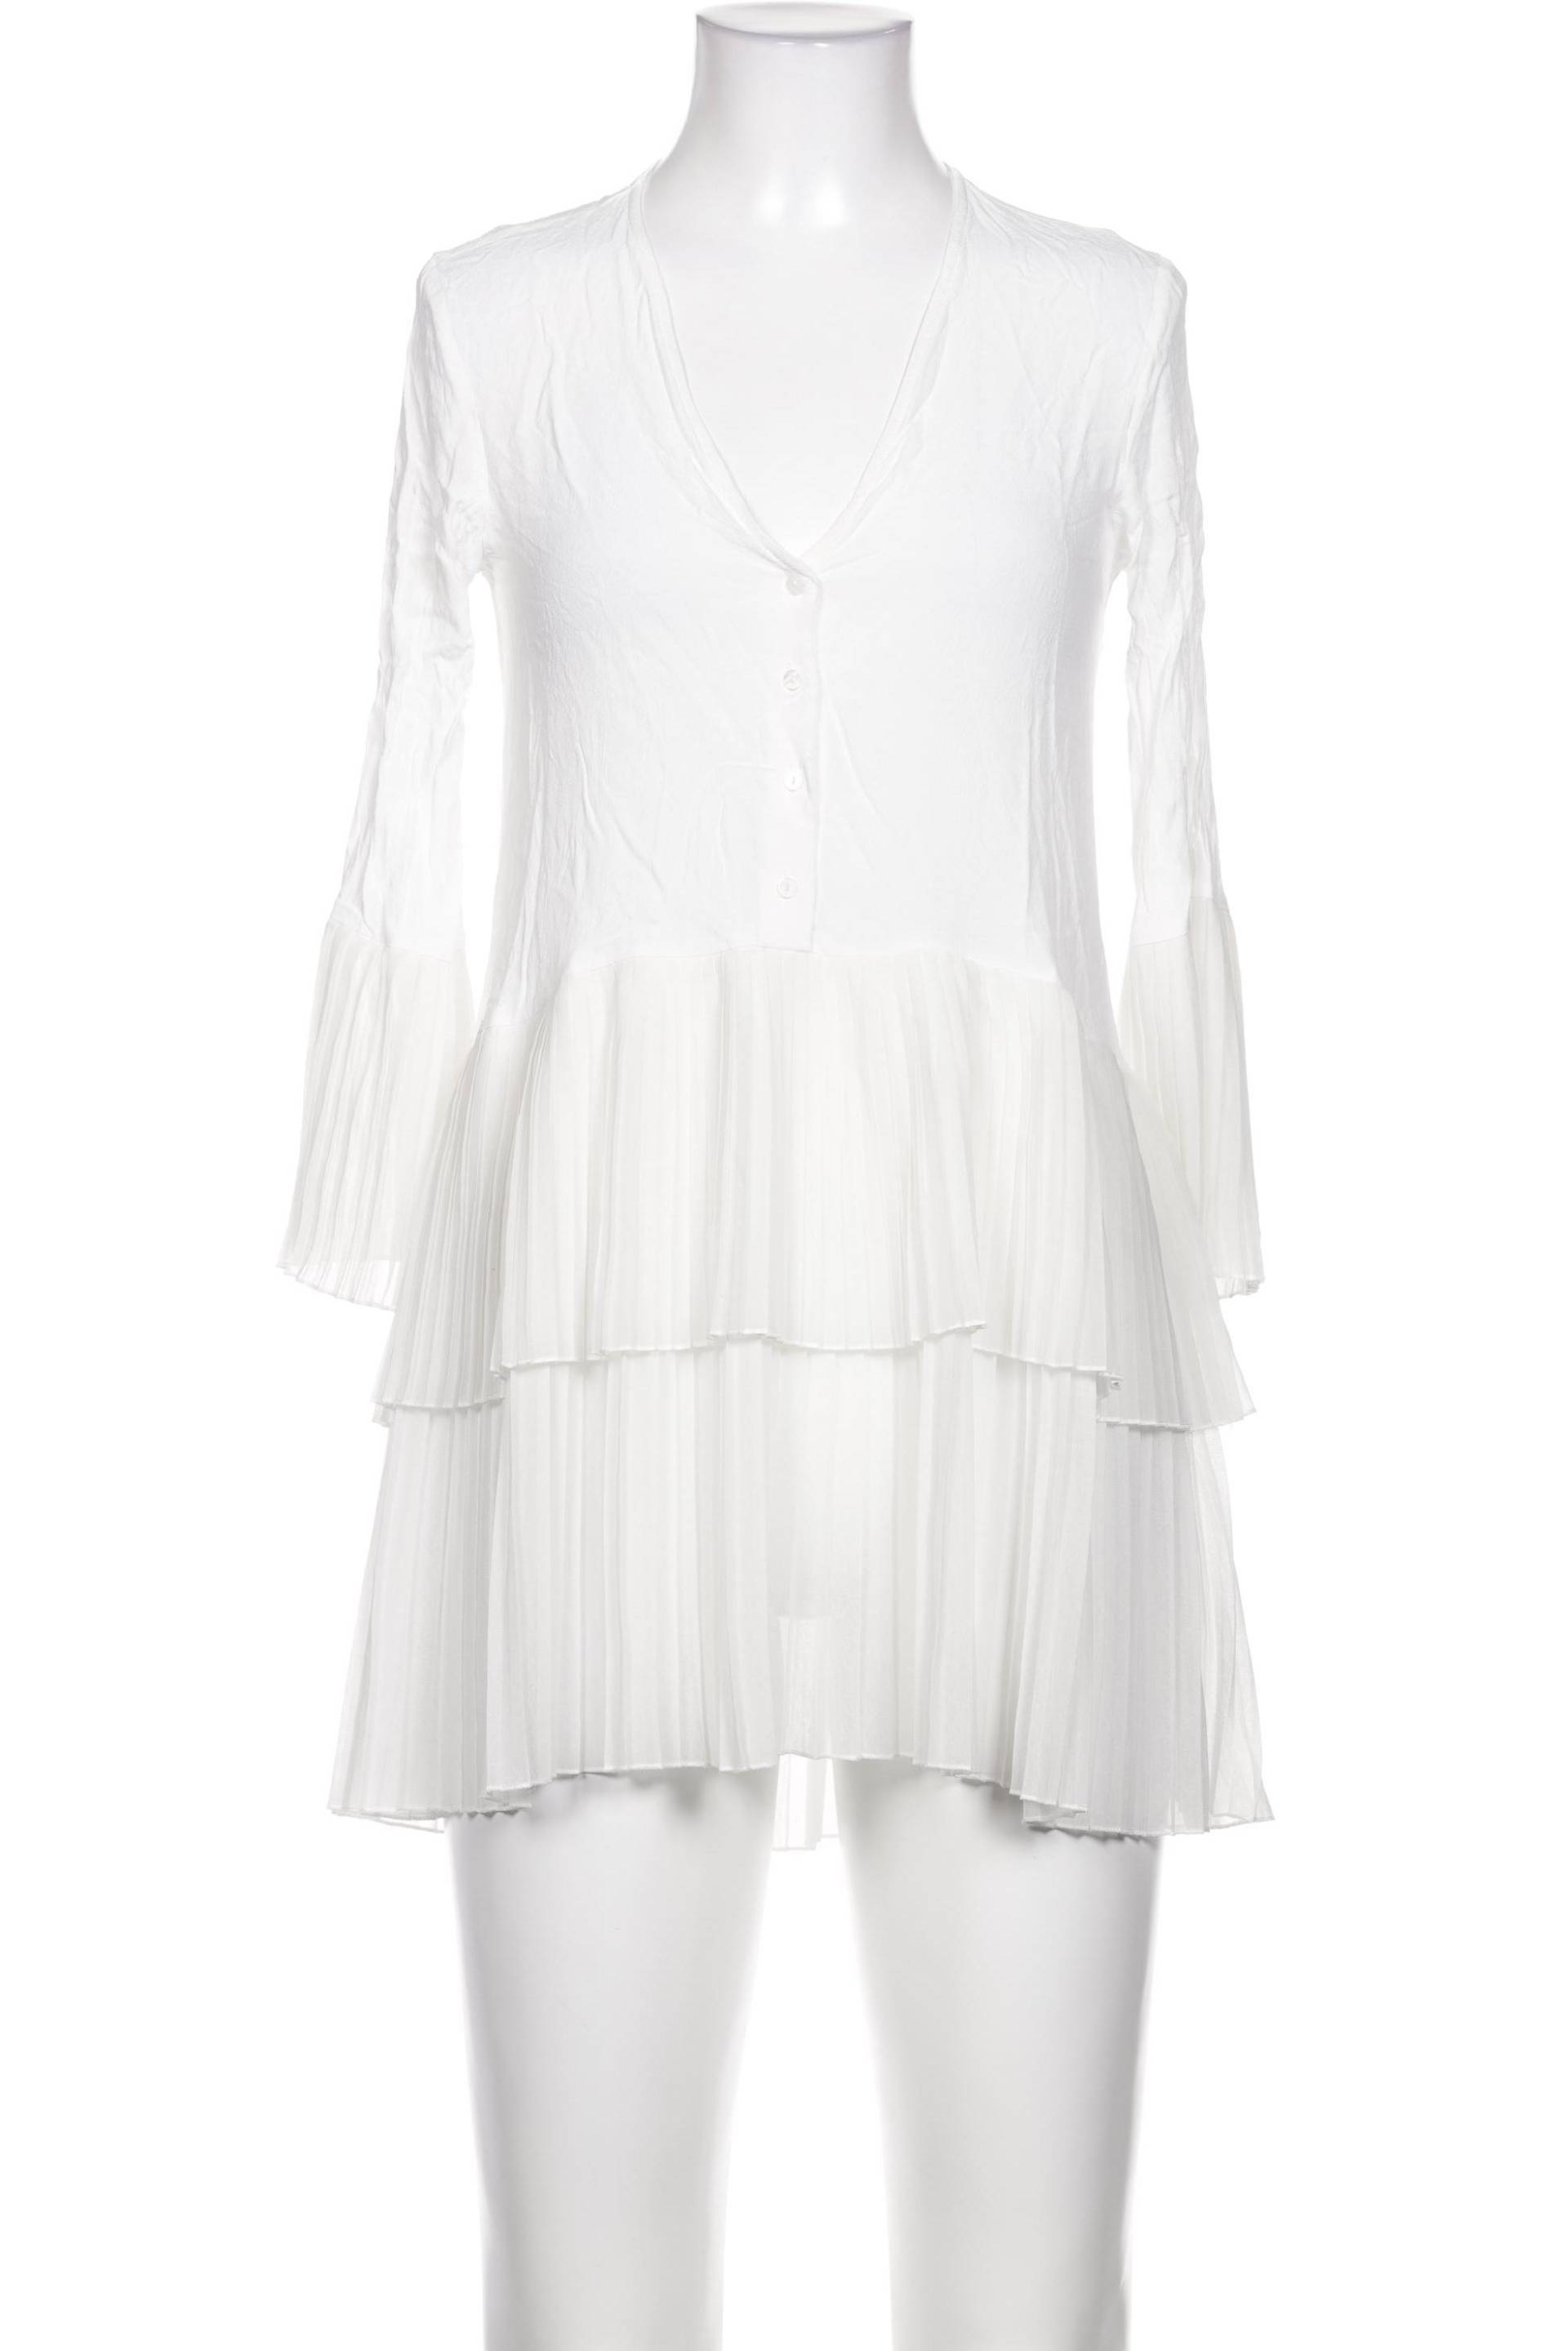 Zara Damen Kleid, weiß, Gr. 34 von ZARA